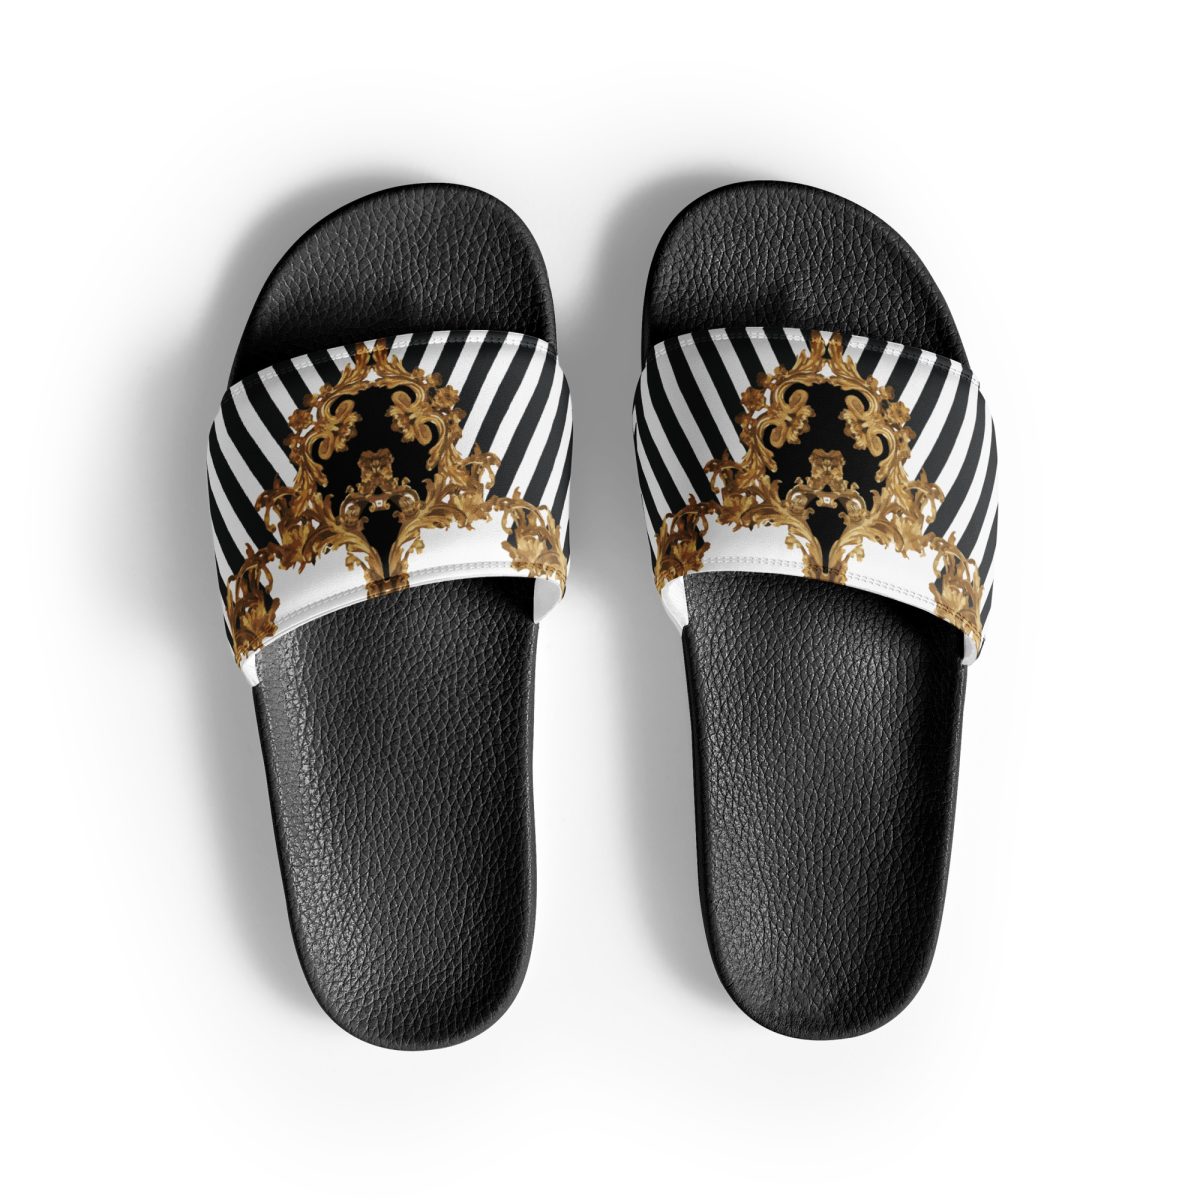 Slides | oofos slide sandals, crocs slide sandals, tory burch flipflops